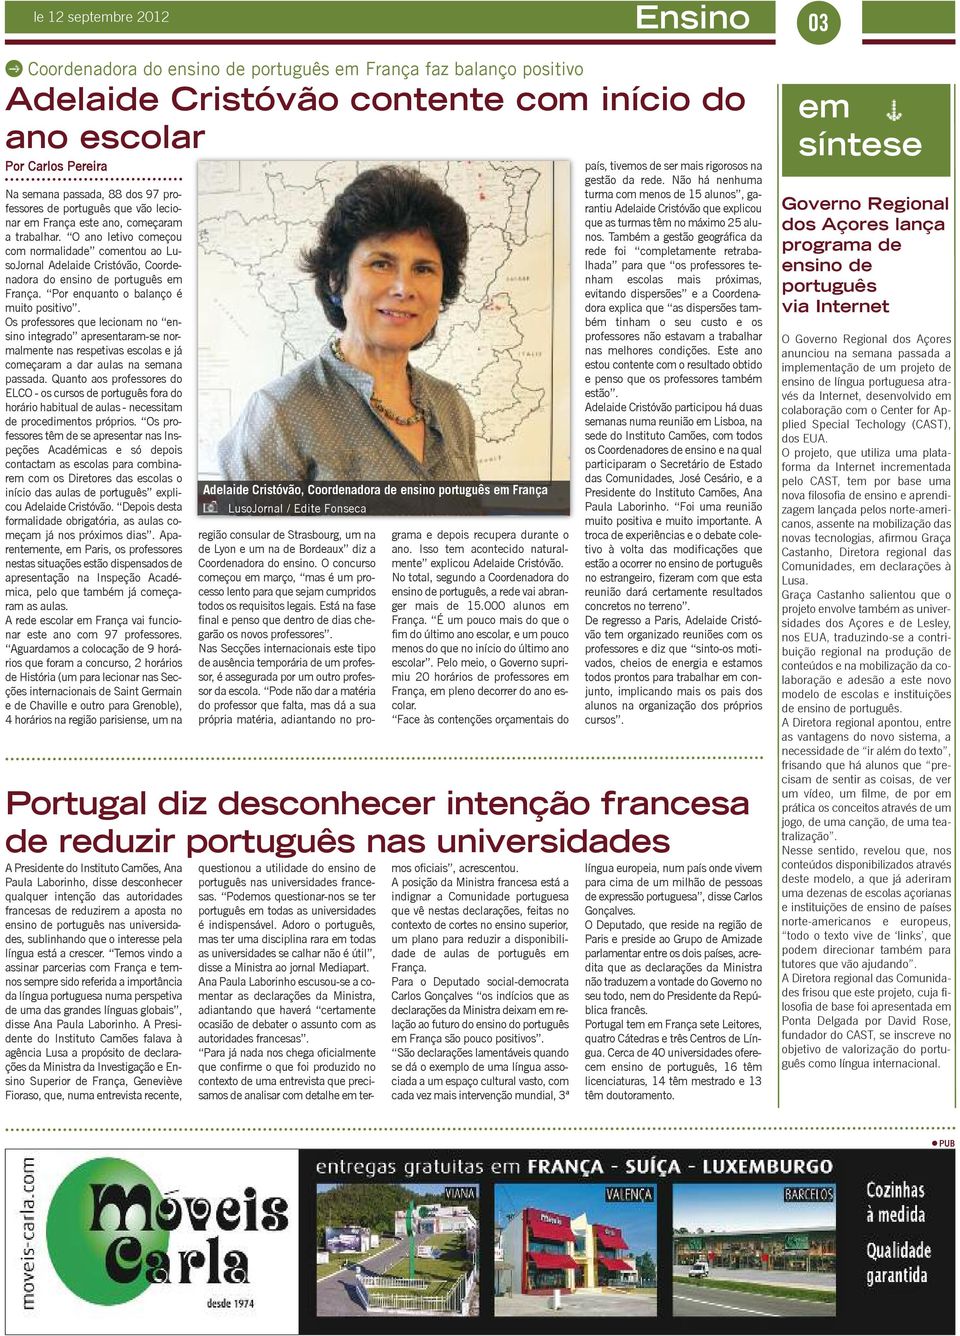 O ano letivo começou com normalidade comentou ao LusoJornal Adelaide Cristóvão, Coordenadora do ensino de português em França. Por enquanto o balanço é muito positivo.